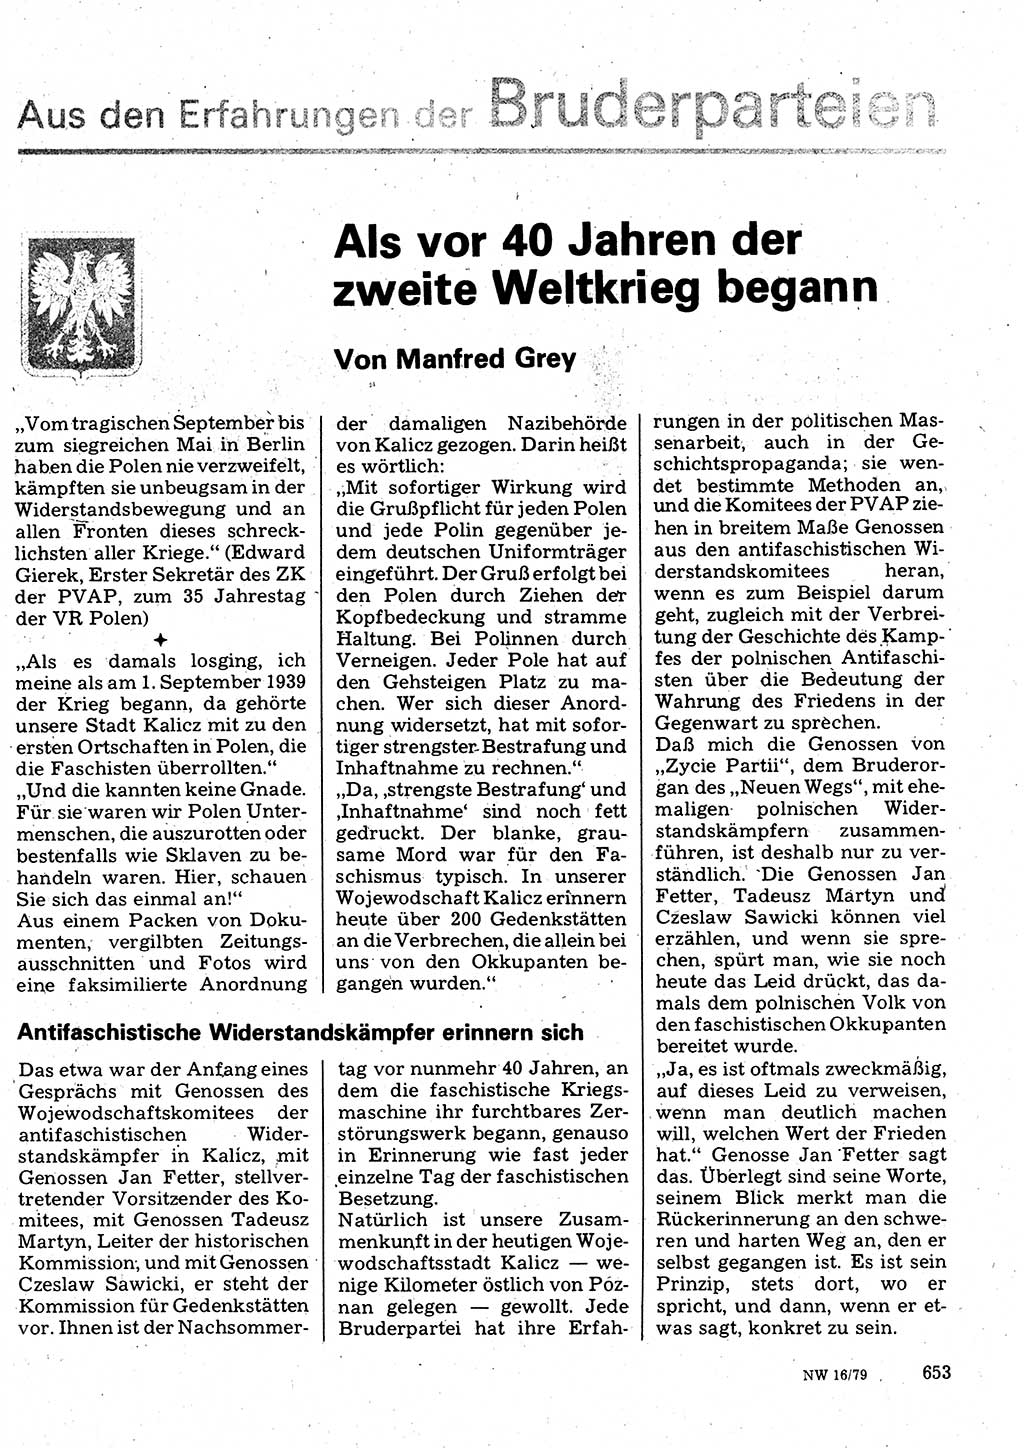 Neuer Weg (NW), Organ des Zentralkomitees (ZK) der SED (Sozialistische Einheitspartei Deutschlands) für Fragen des Parteilebens, 34. Jahrgang [Deutsche Demokratische Republik (DDR)] 1979, Seite 653 (NW ZK SED DDR 1979, S. 653)